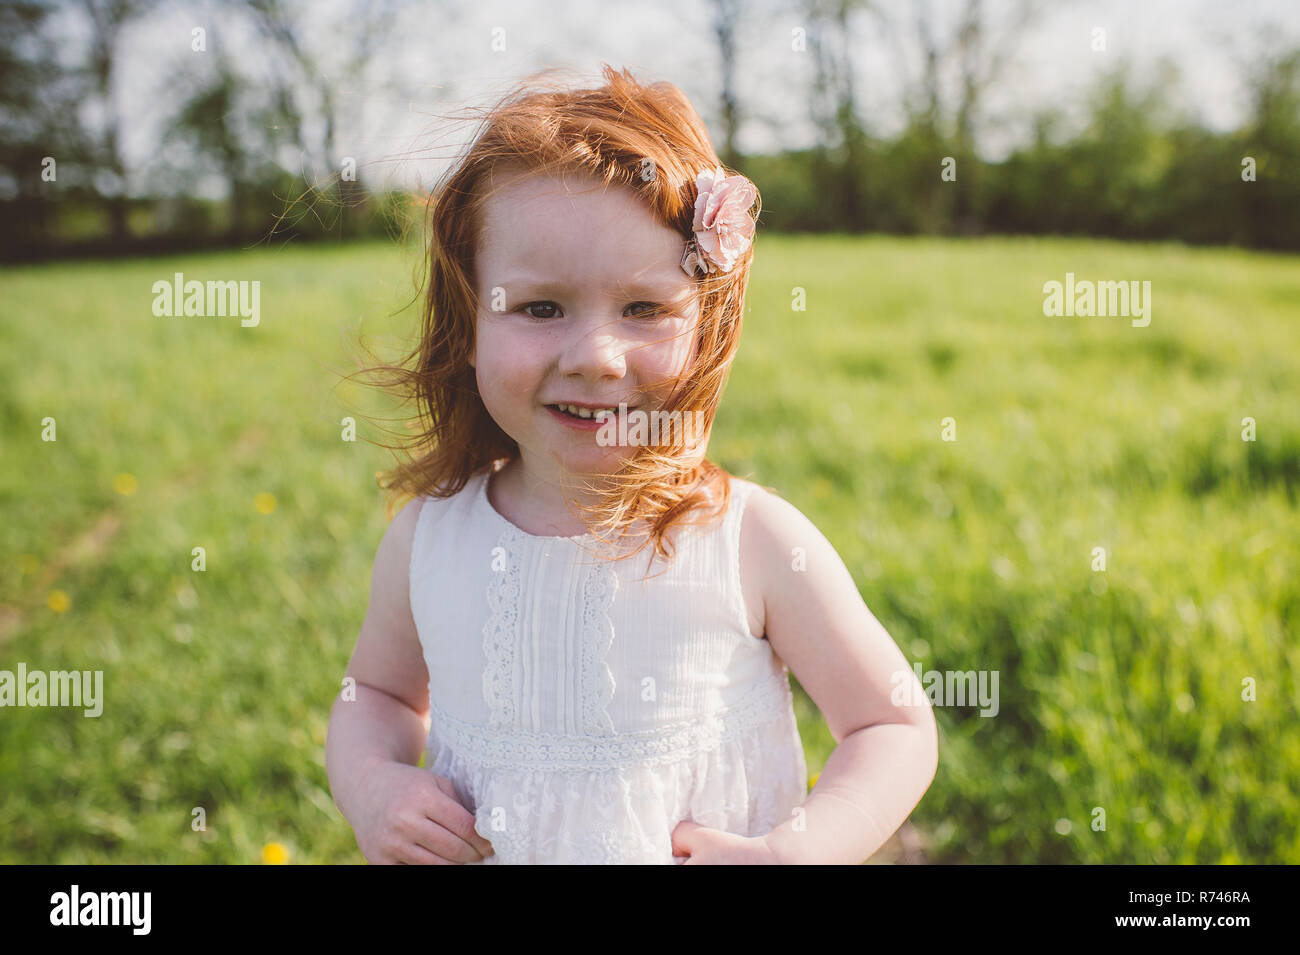 Little girl in park Stock Photo